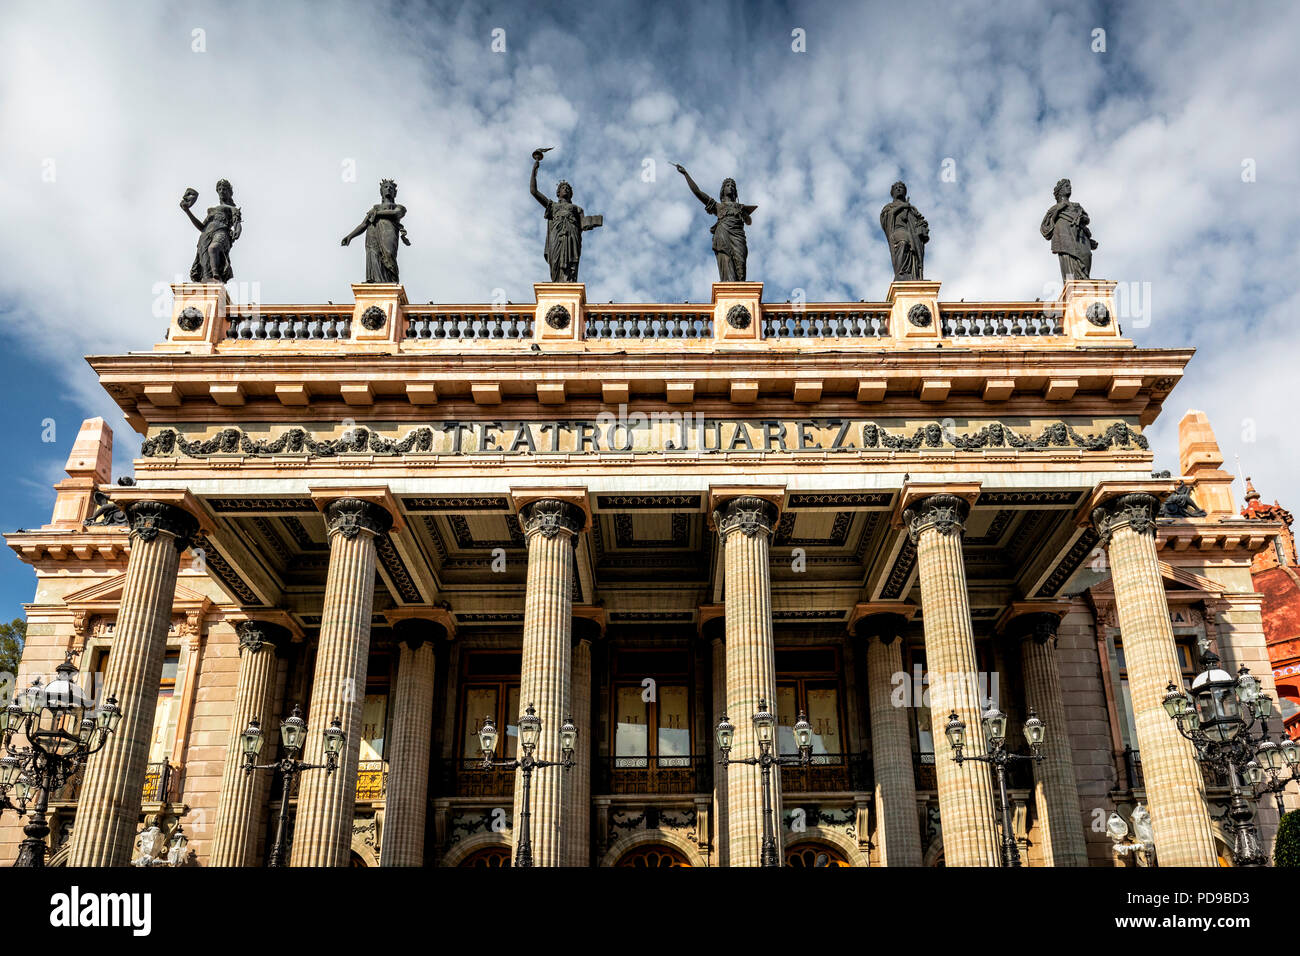 Le théâtre de Benito Juarez, un monument à Guanajuato, au Mexique. Banque D'Images